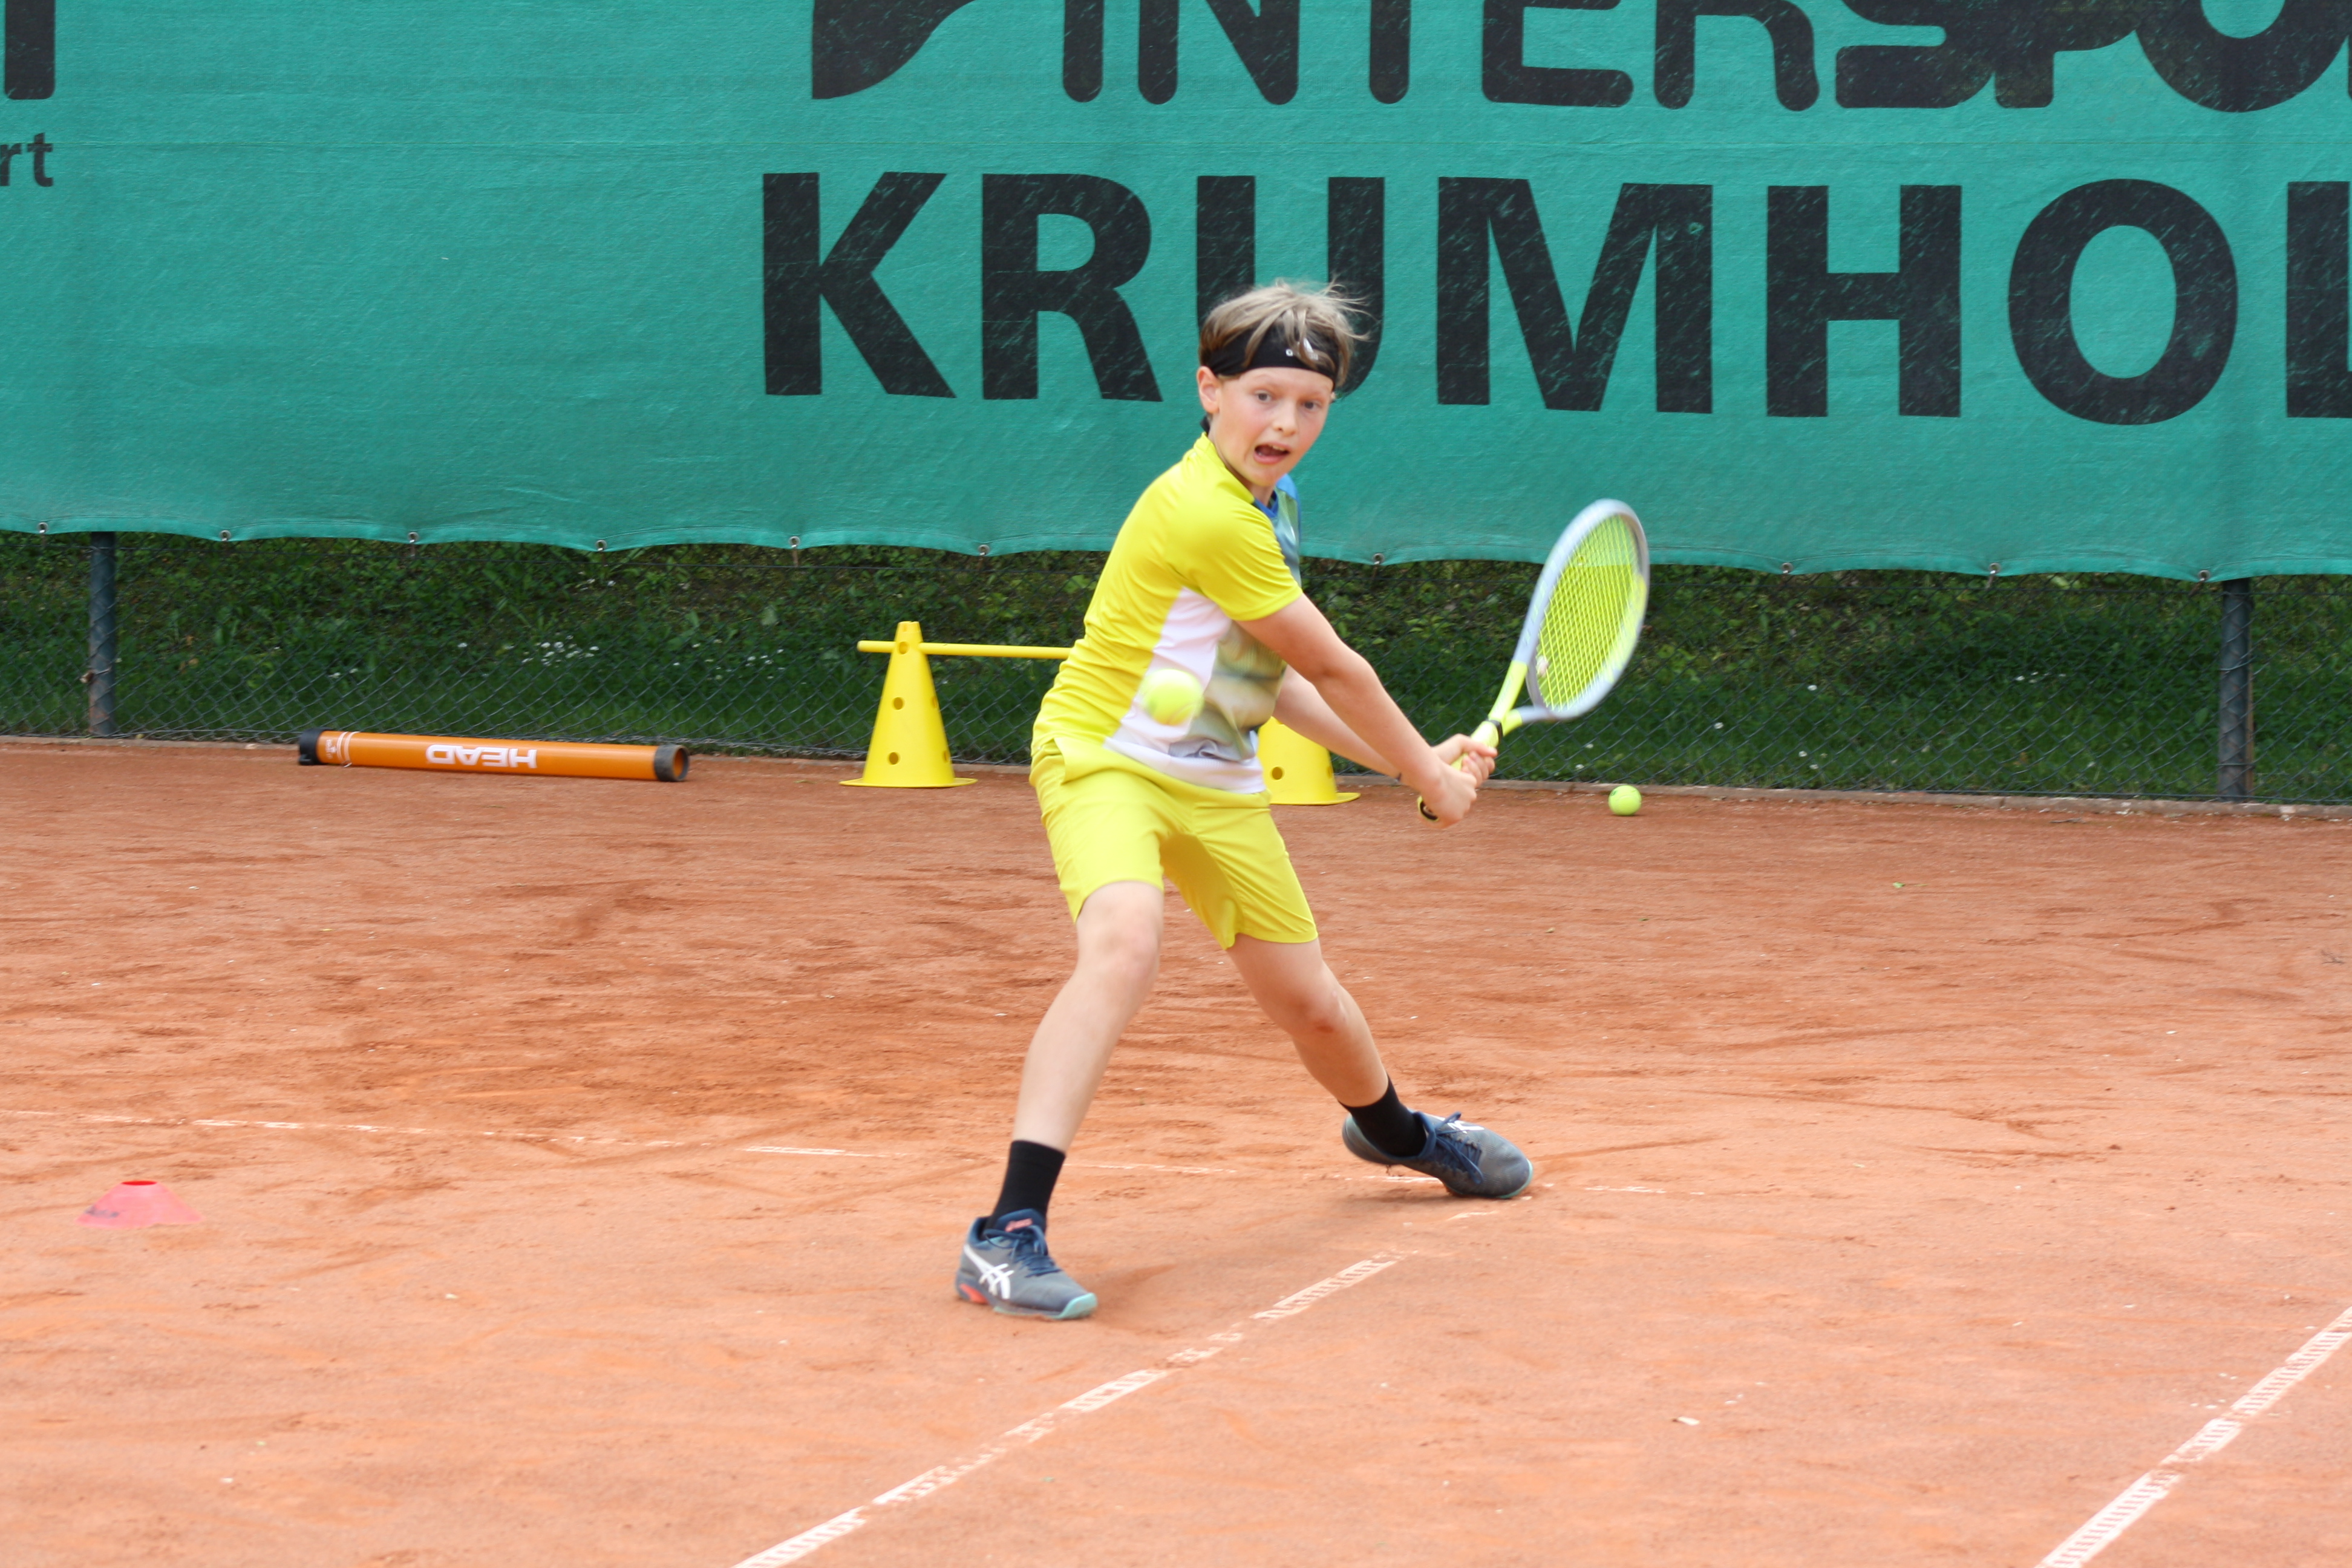 VfR Intensiv-Trainingsinitiative 2022 - Vinnice Schmidt - Justus Baumgart Tennis.JPG